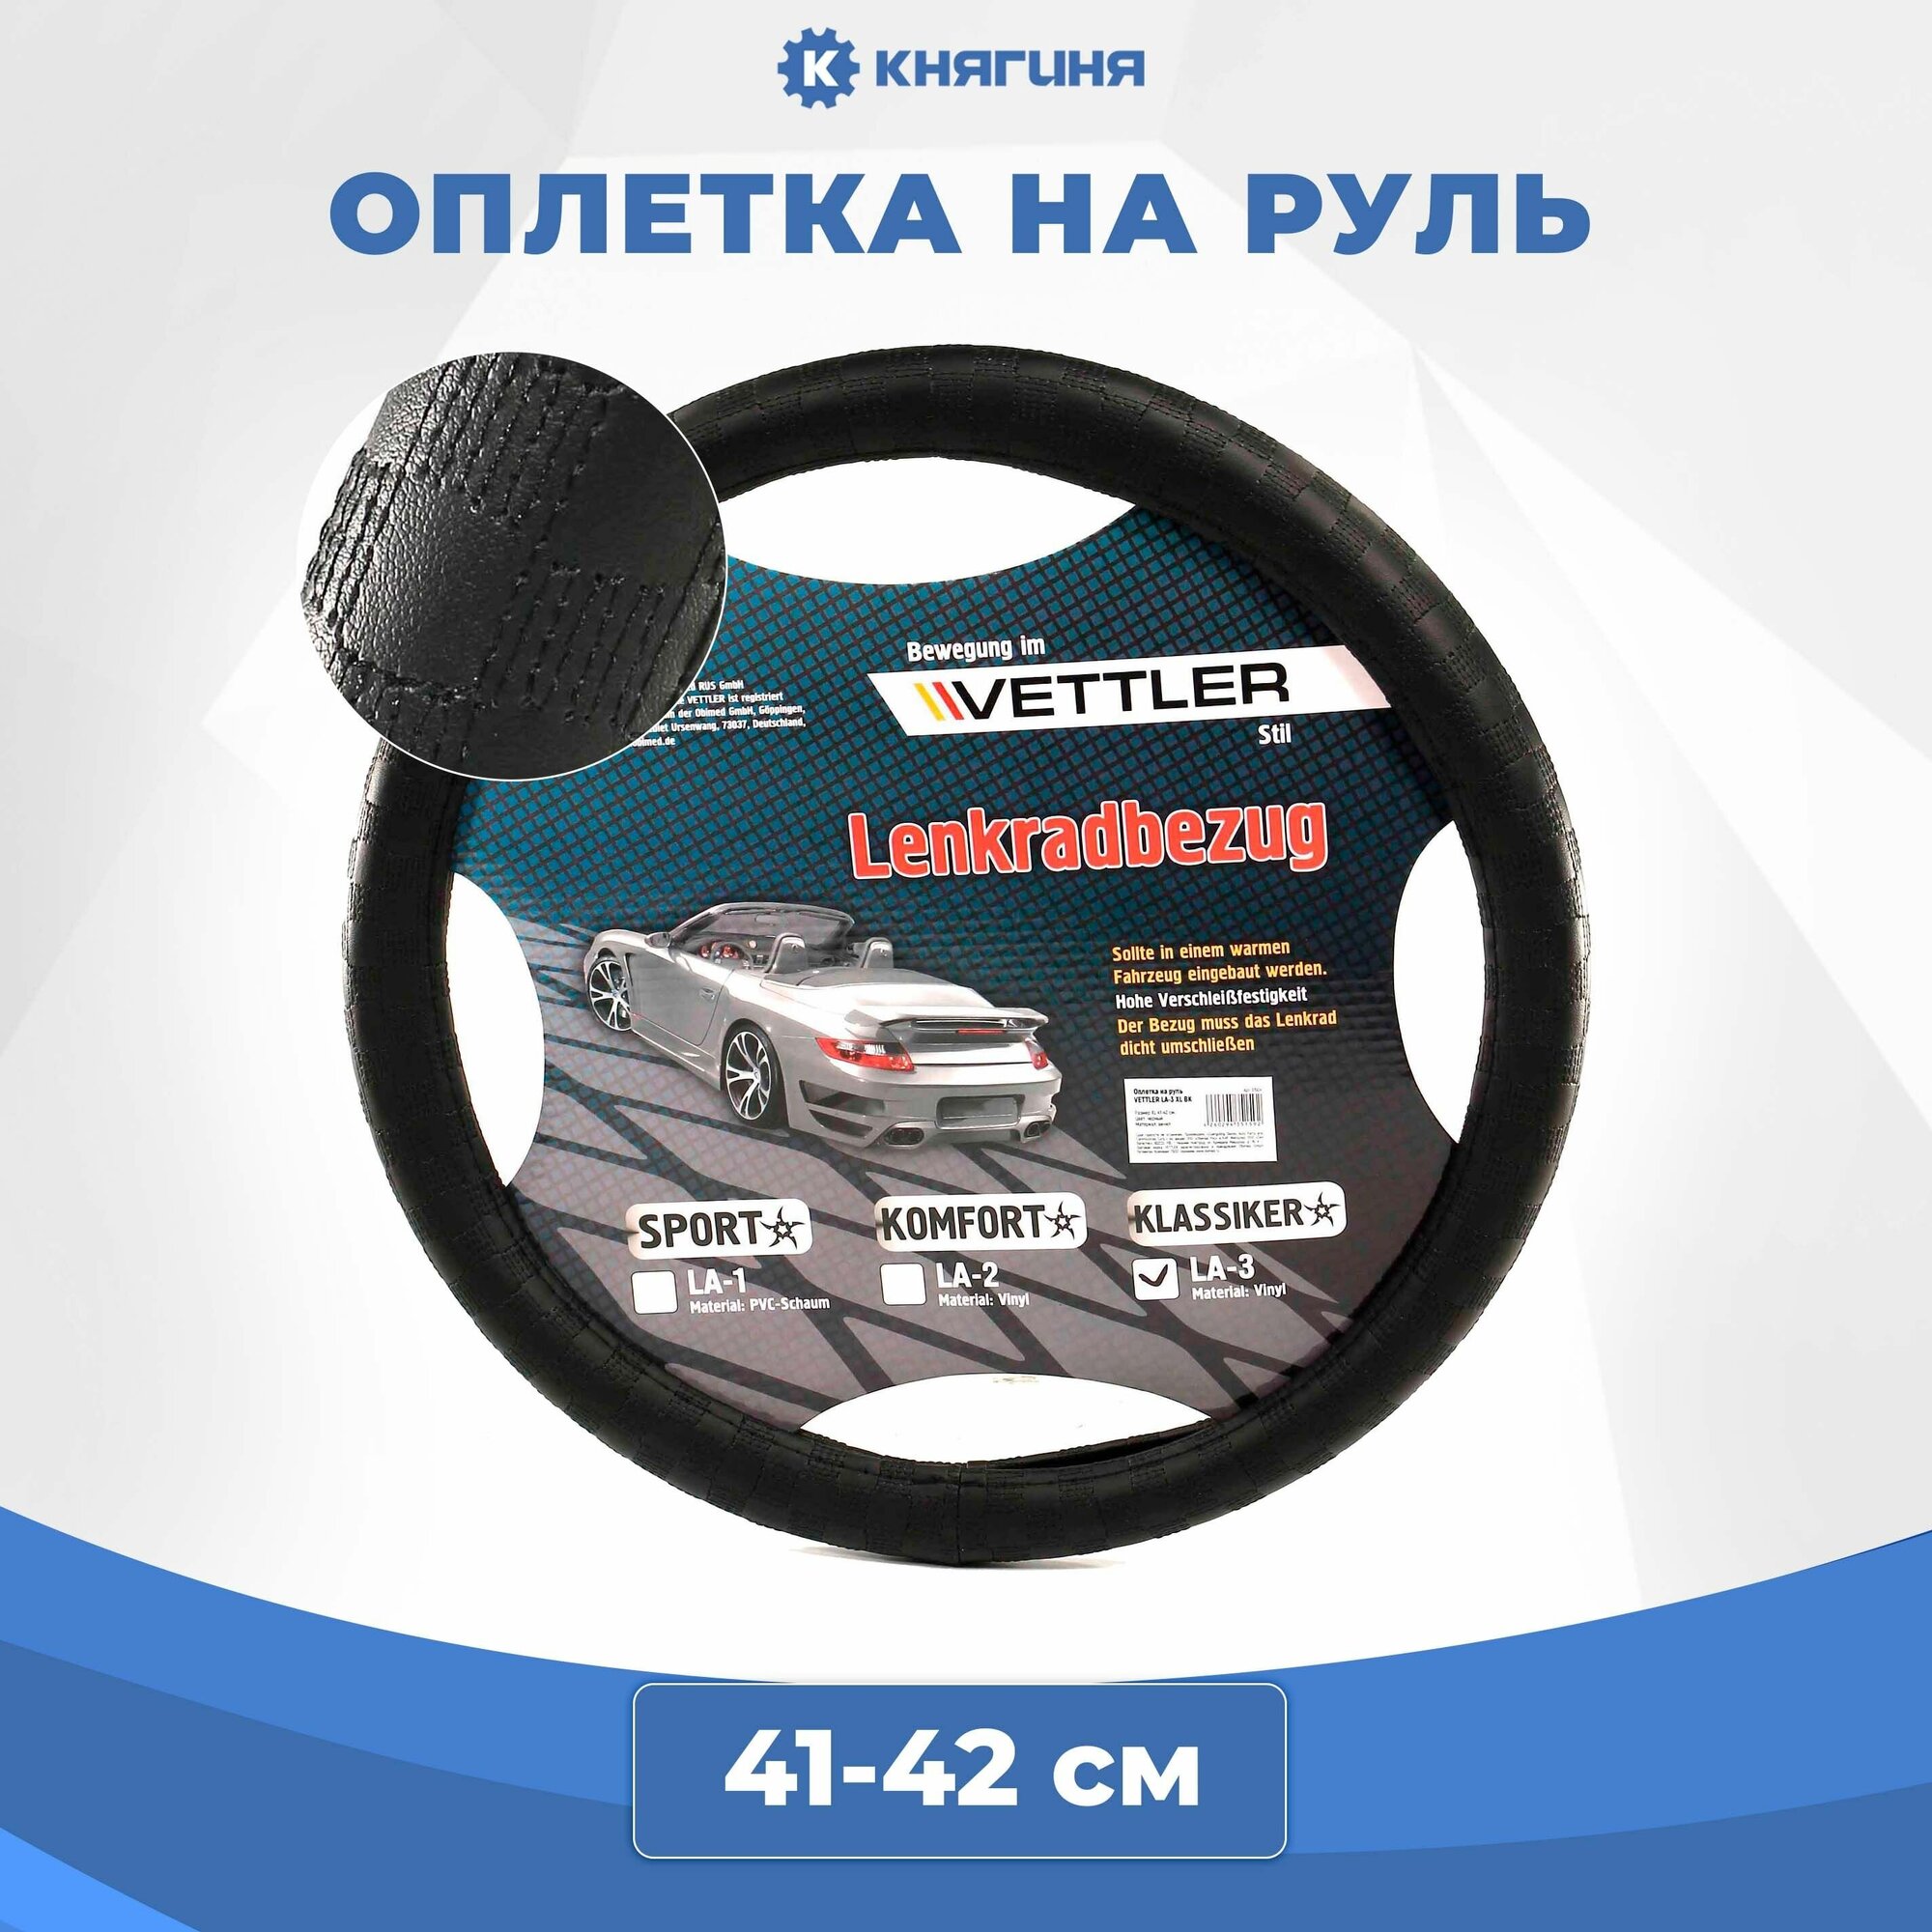 Оплетка на руль VETTLER PVC, черная KLASSIKER , Размер XL 41-42 см